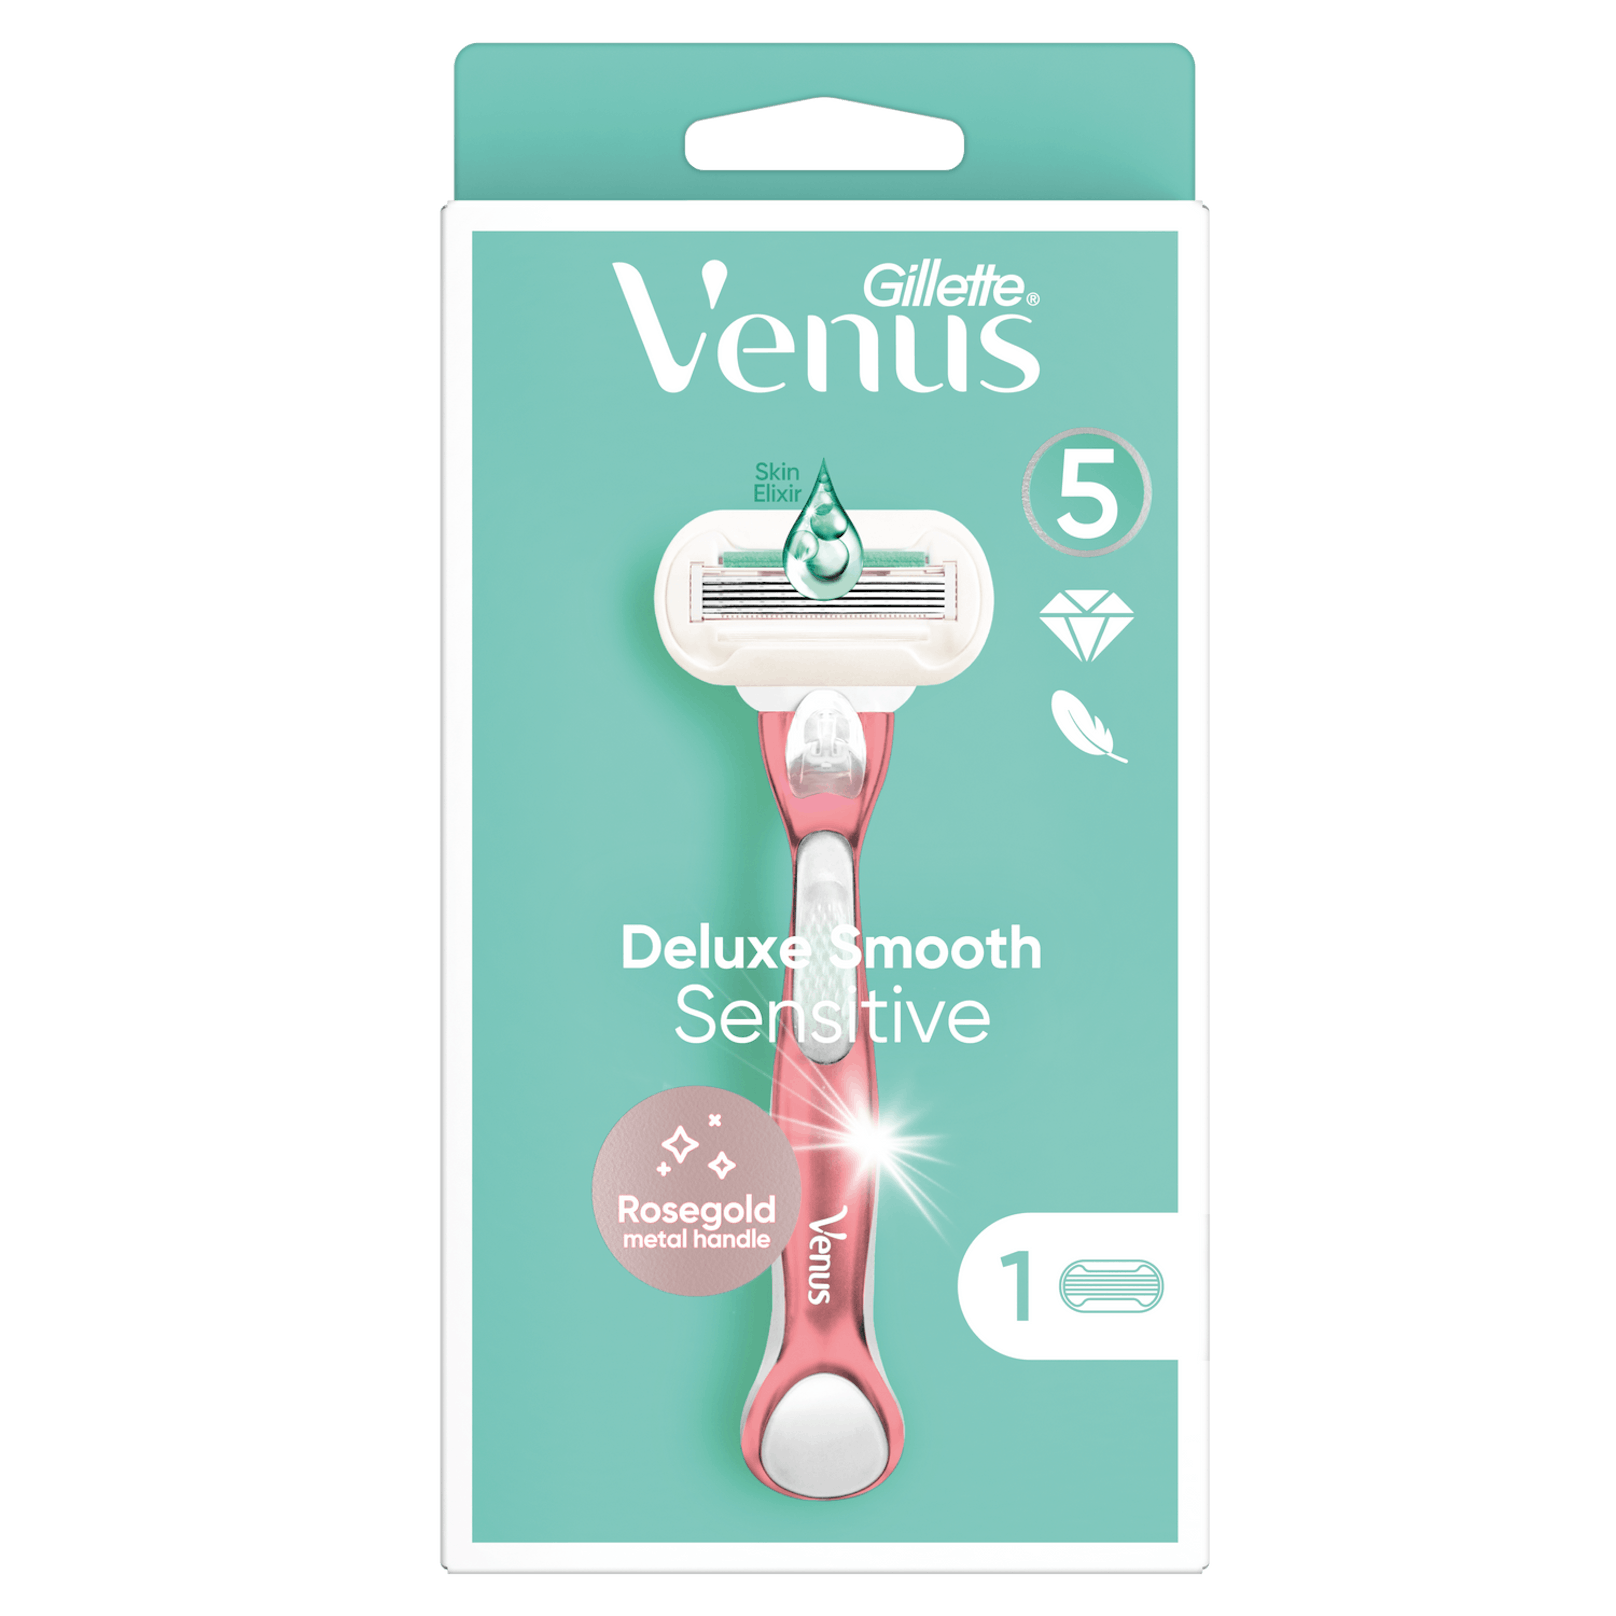 Der Gillette Venus Deluxe Smooth Sensitive mit SKinElixir Gleitstreifen zum Schutz sensibler Haut